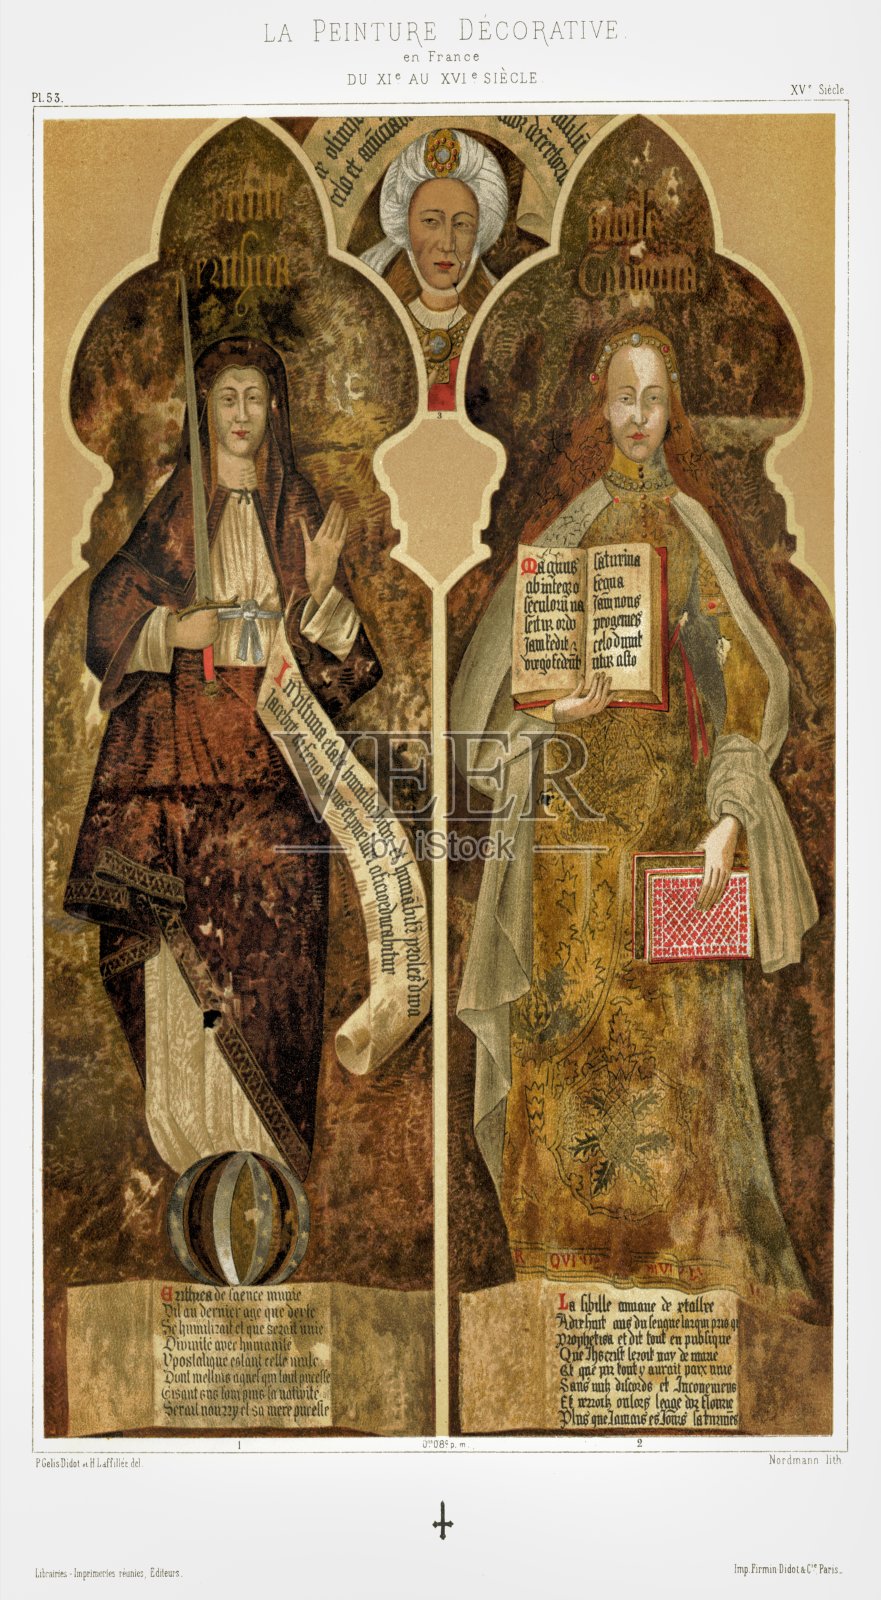 西比尔人物厄立特里亚和库梅在礼拜堂-Éloi，在亚安大教堂(索姆)，装饰油漆来自法国1896插画图片素材